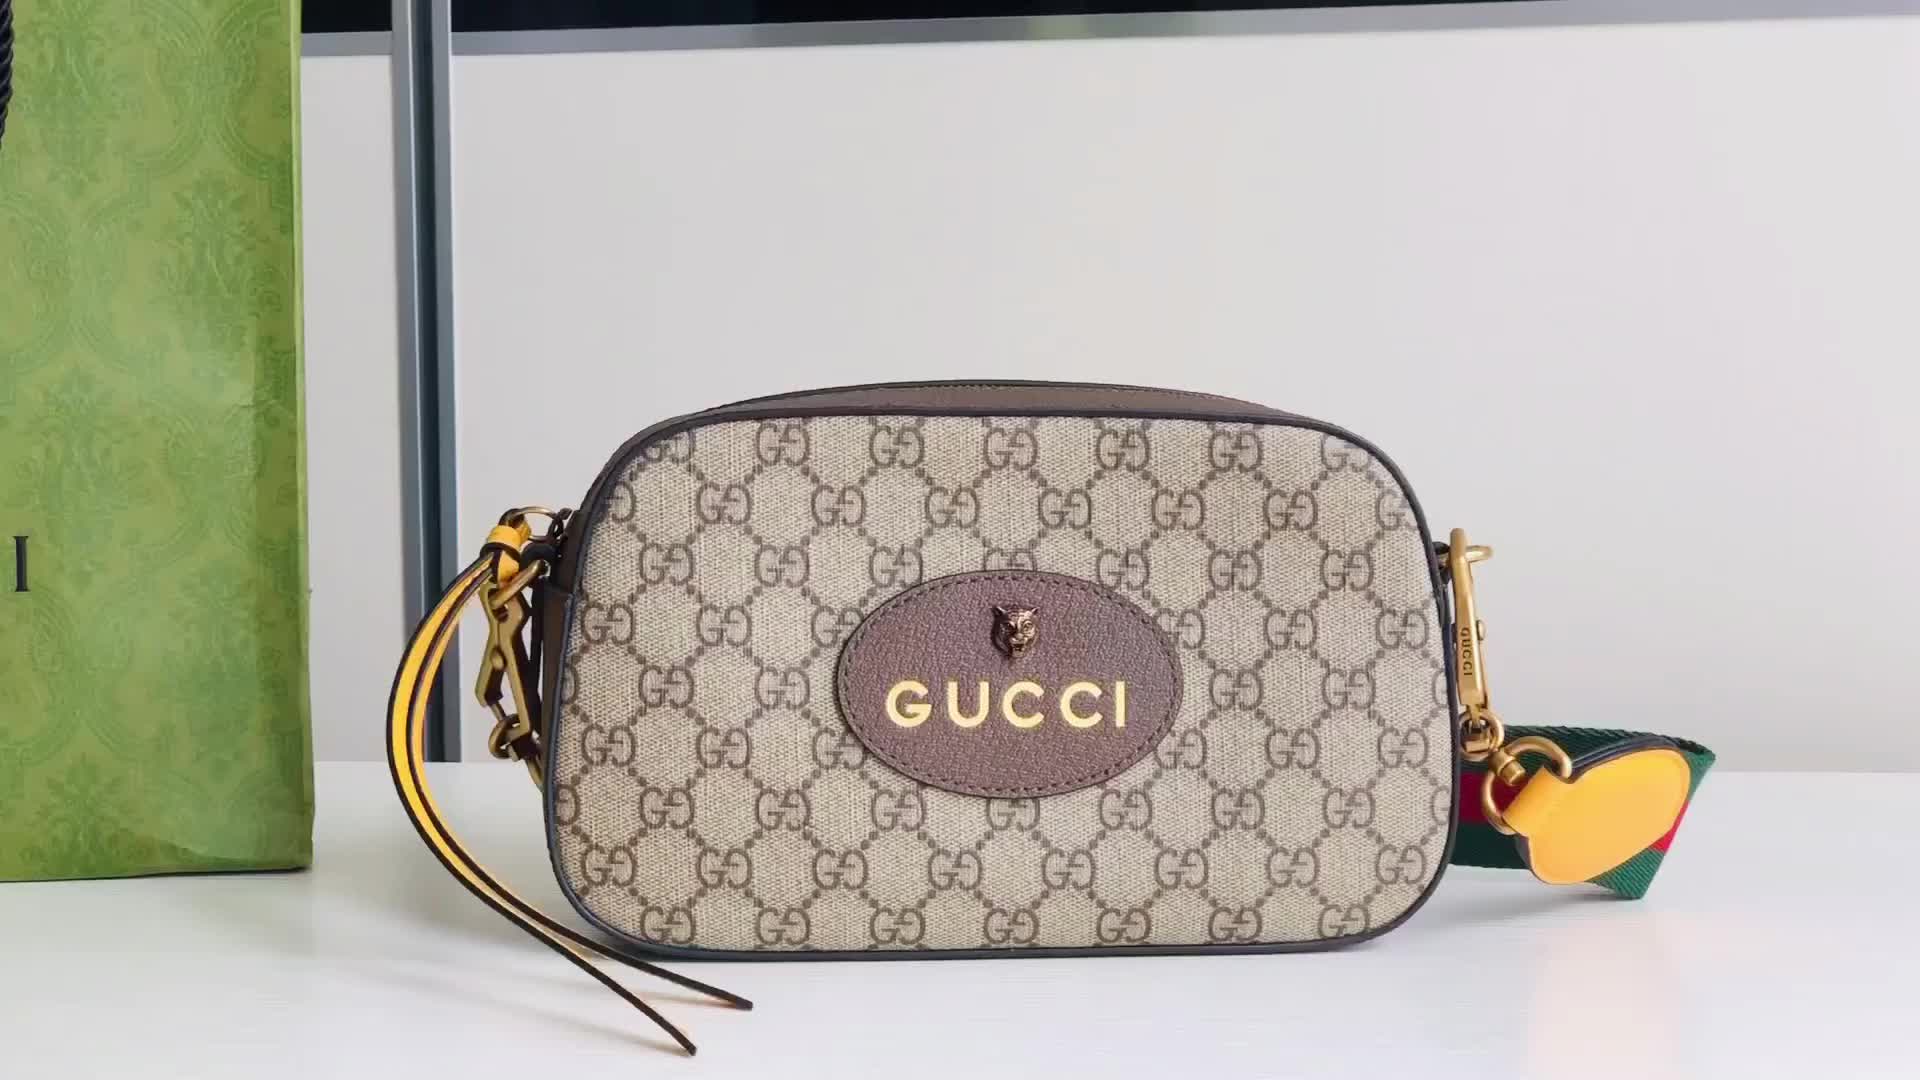 Gucci Bag Promotion Code: QB1108